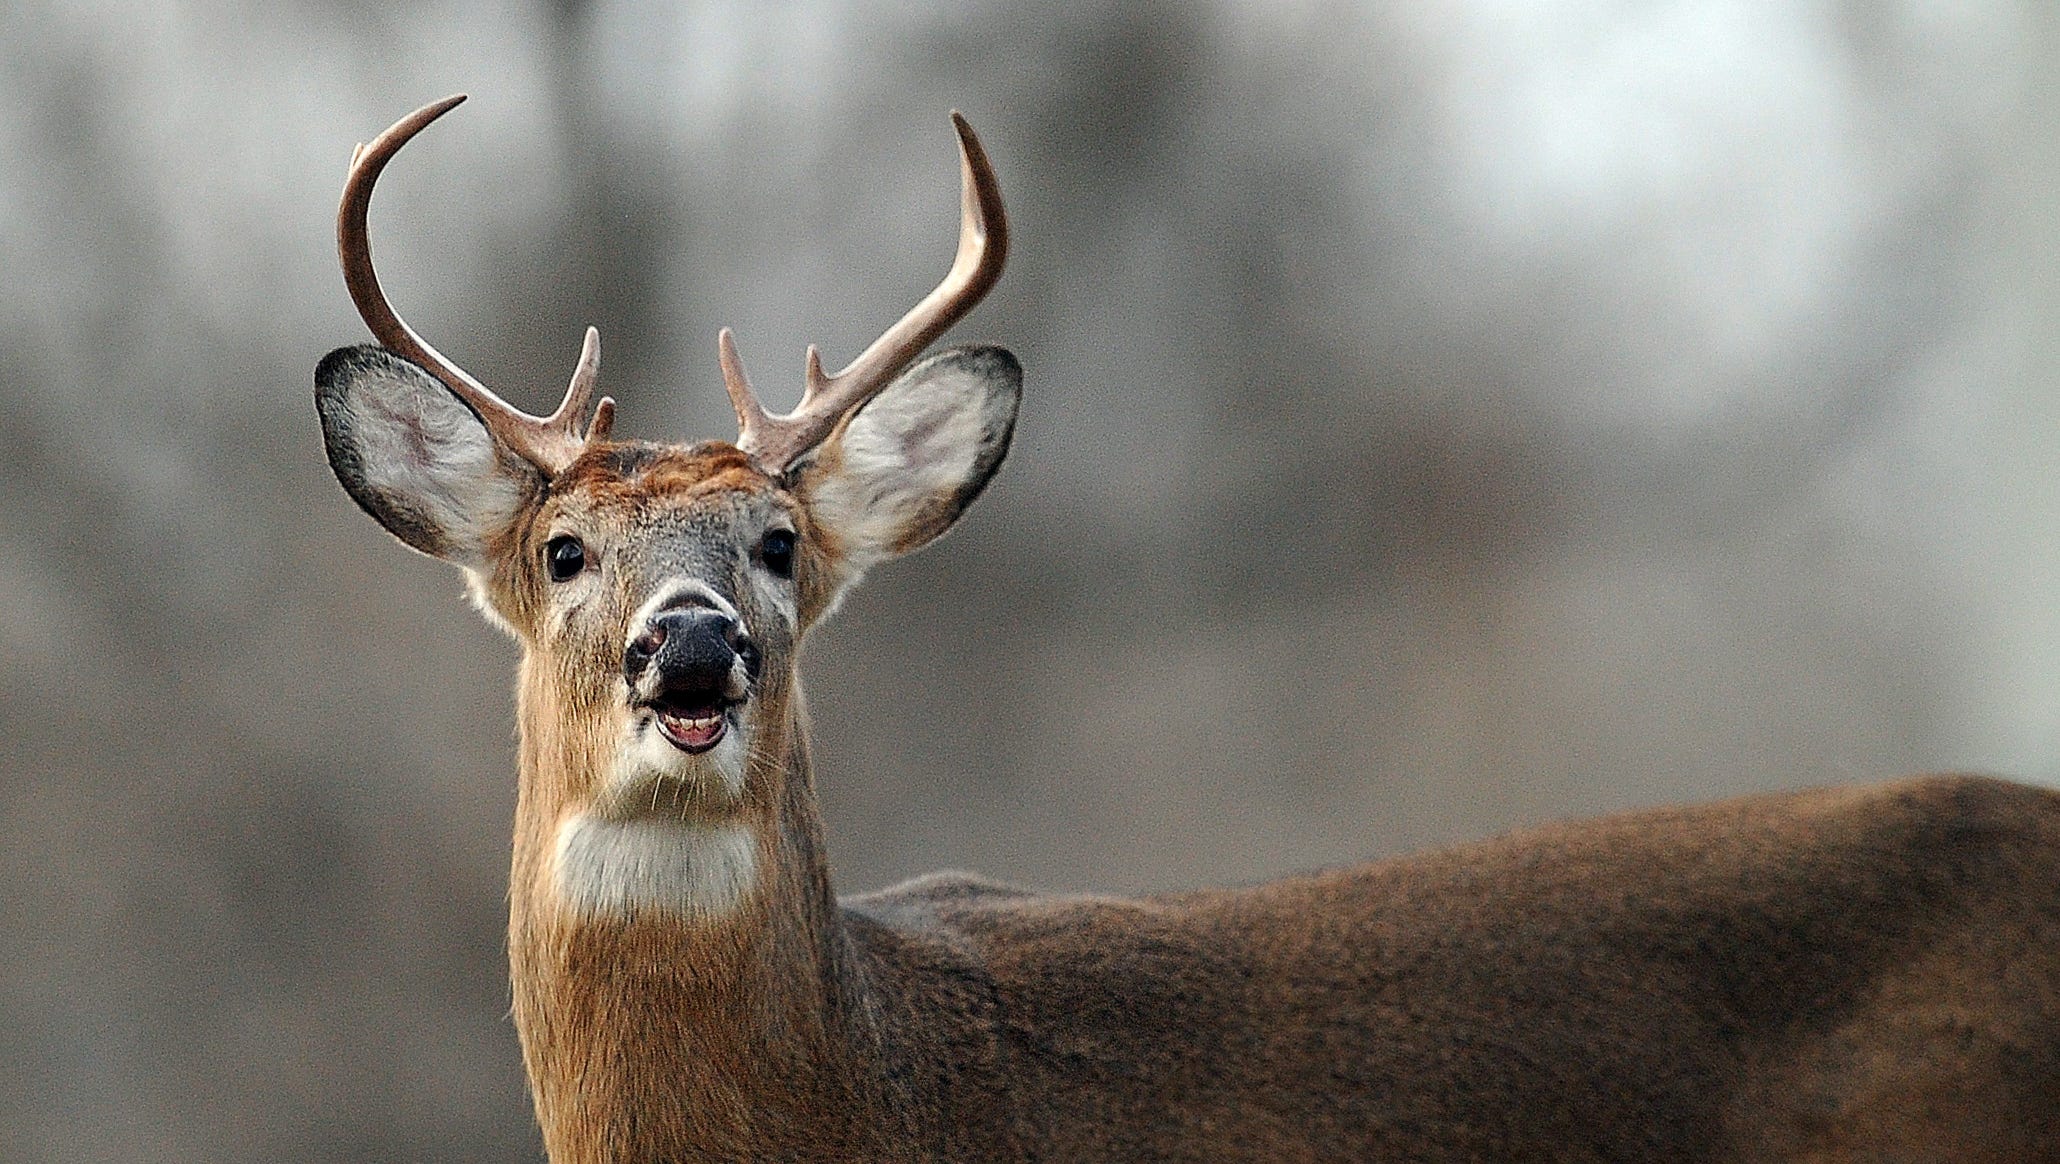 Detail Image Of A Deer Nomer 57